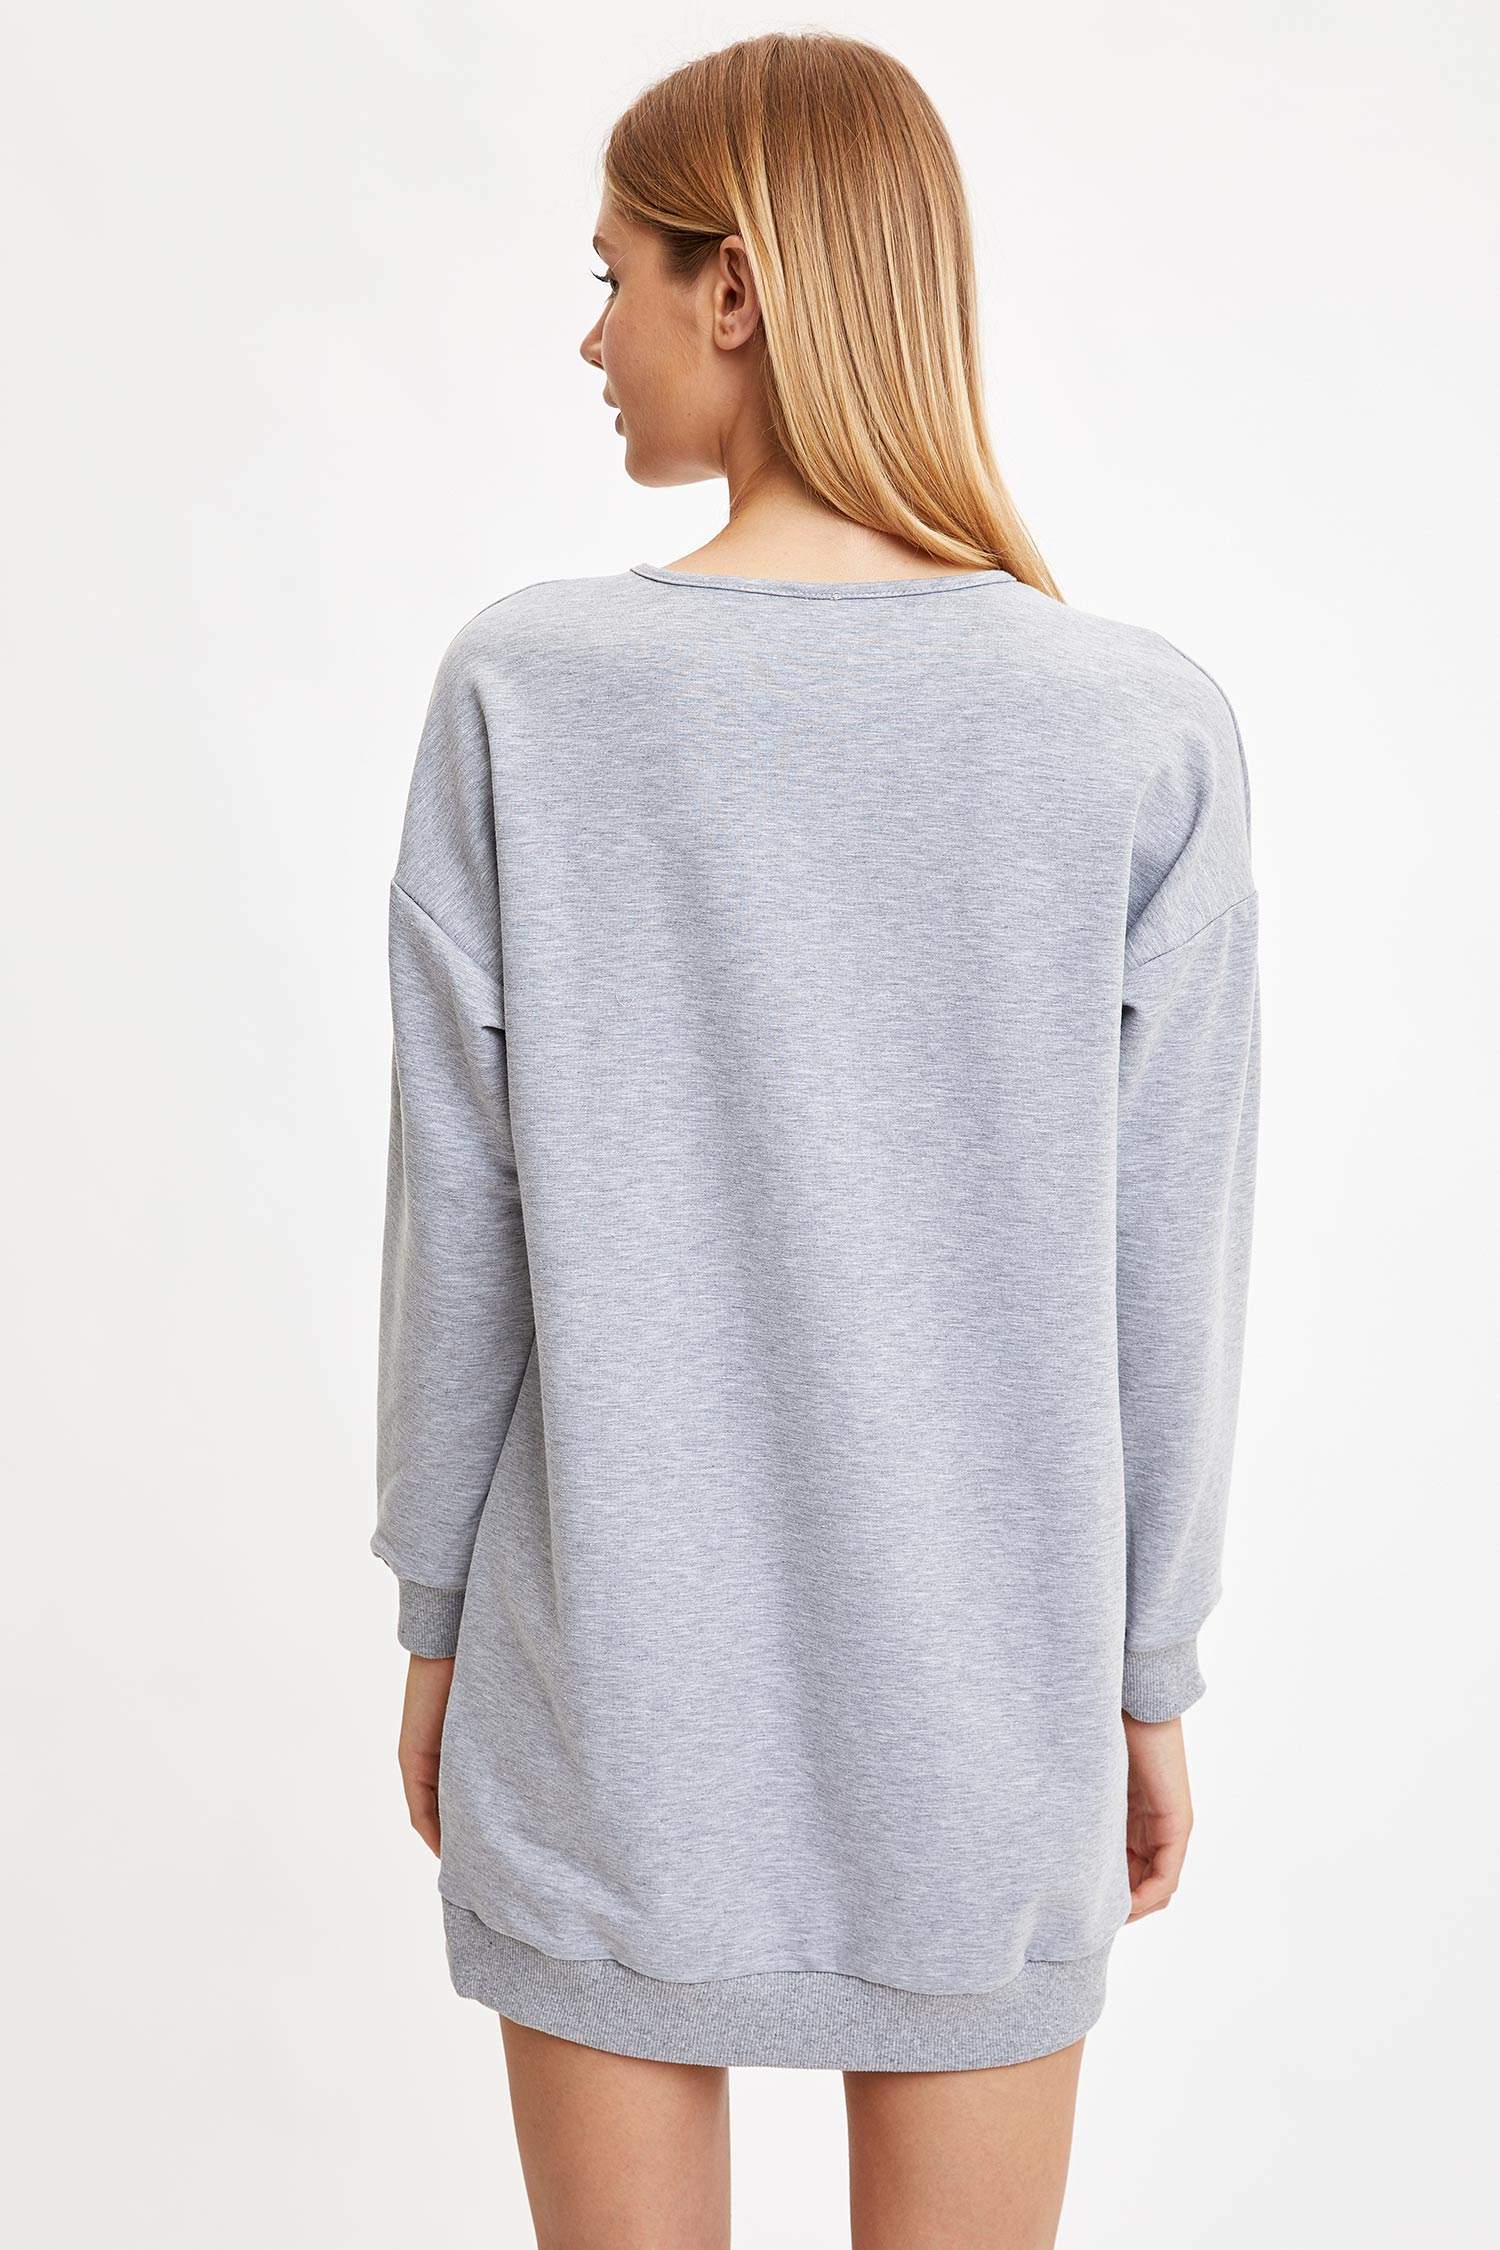 Defacto Fall In Love Regular Fit Yuvarlak Yaka Baskılı Sweatshirt Kumaşı Elbise. 4